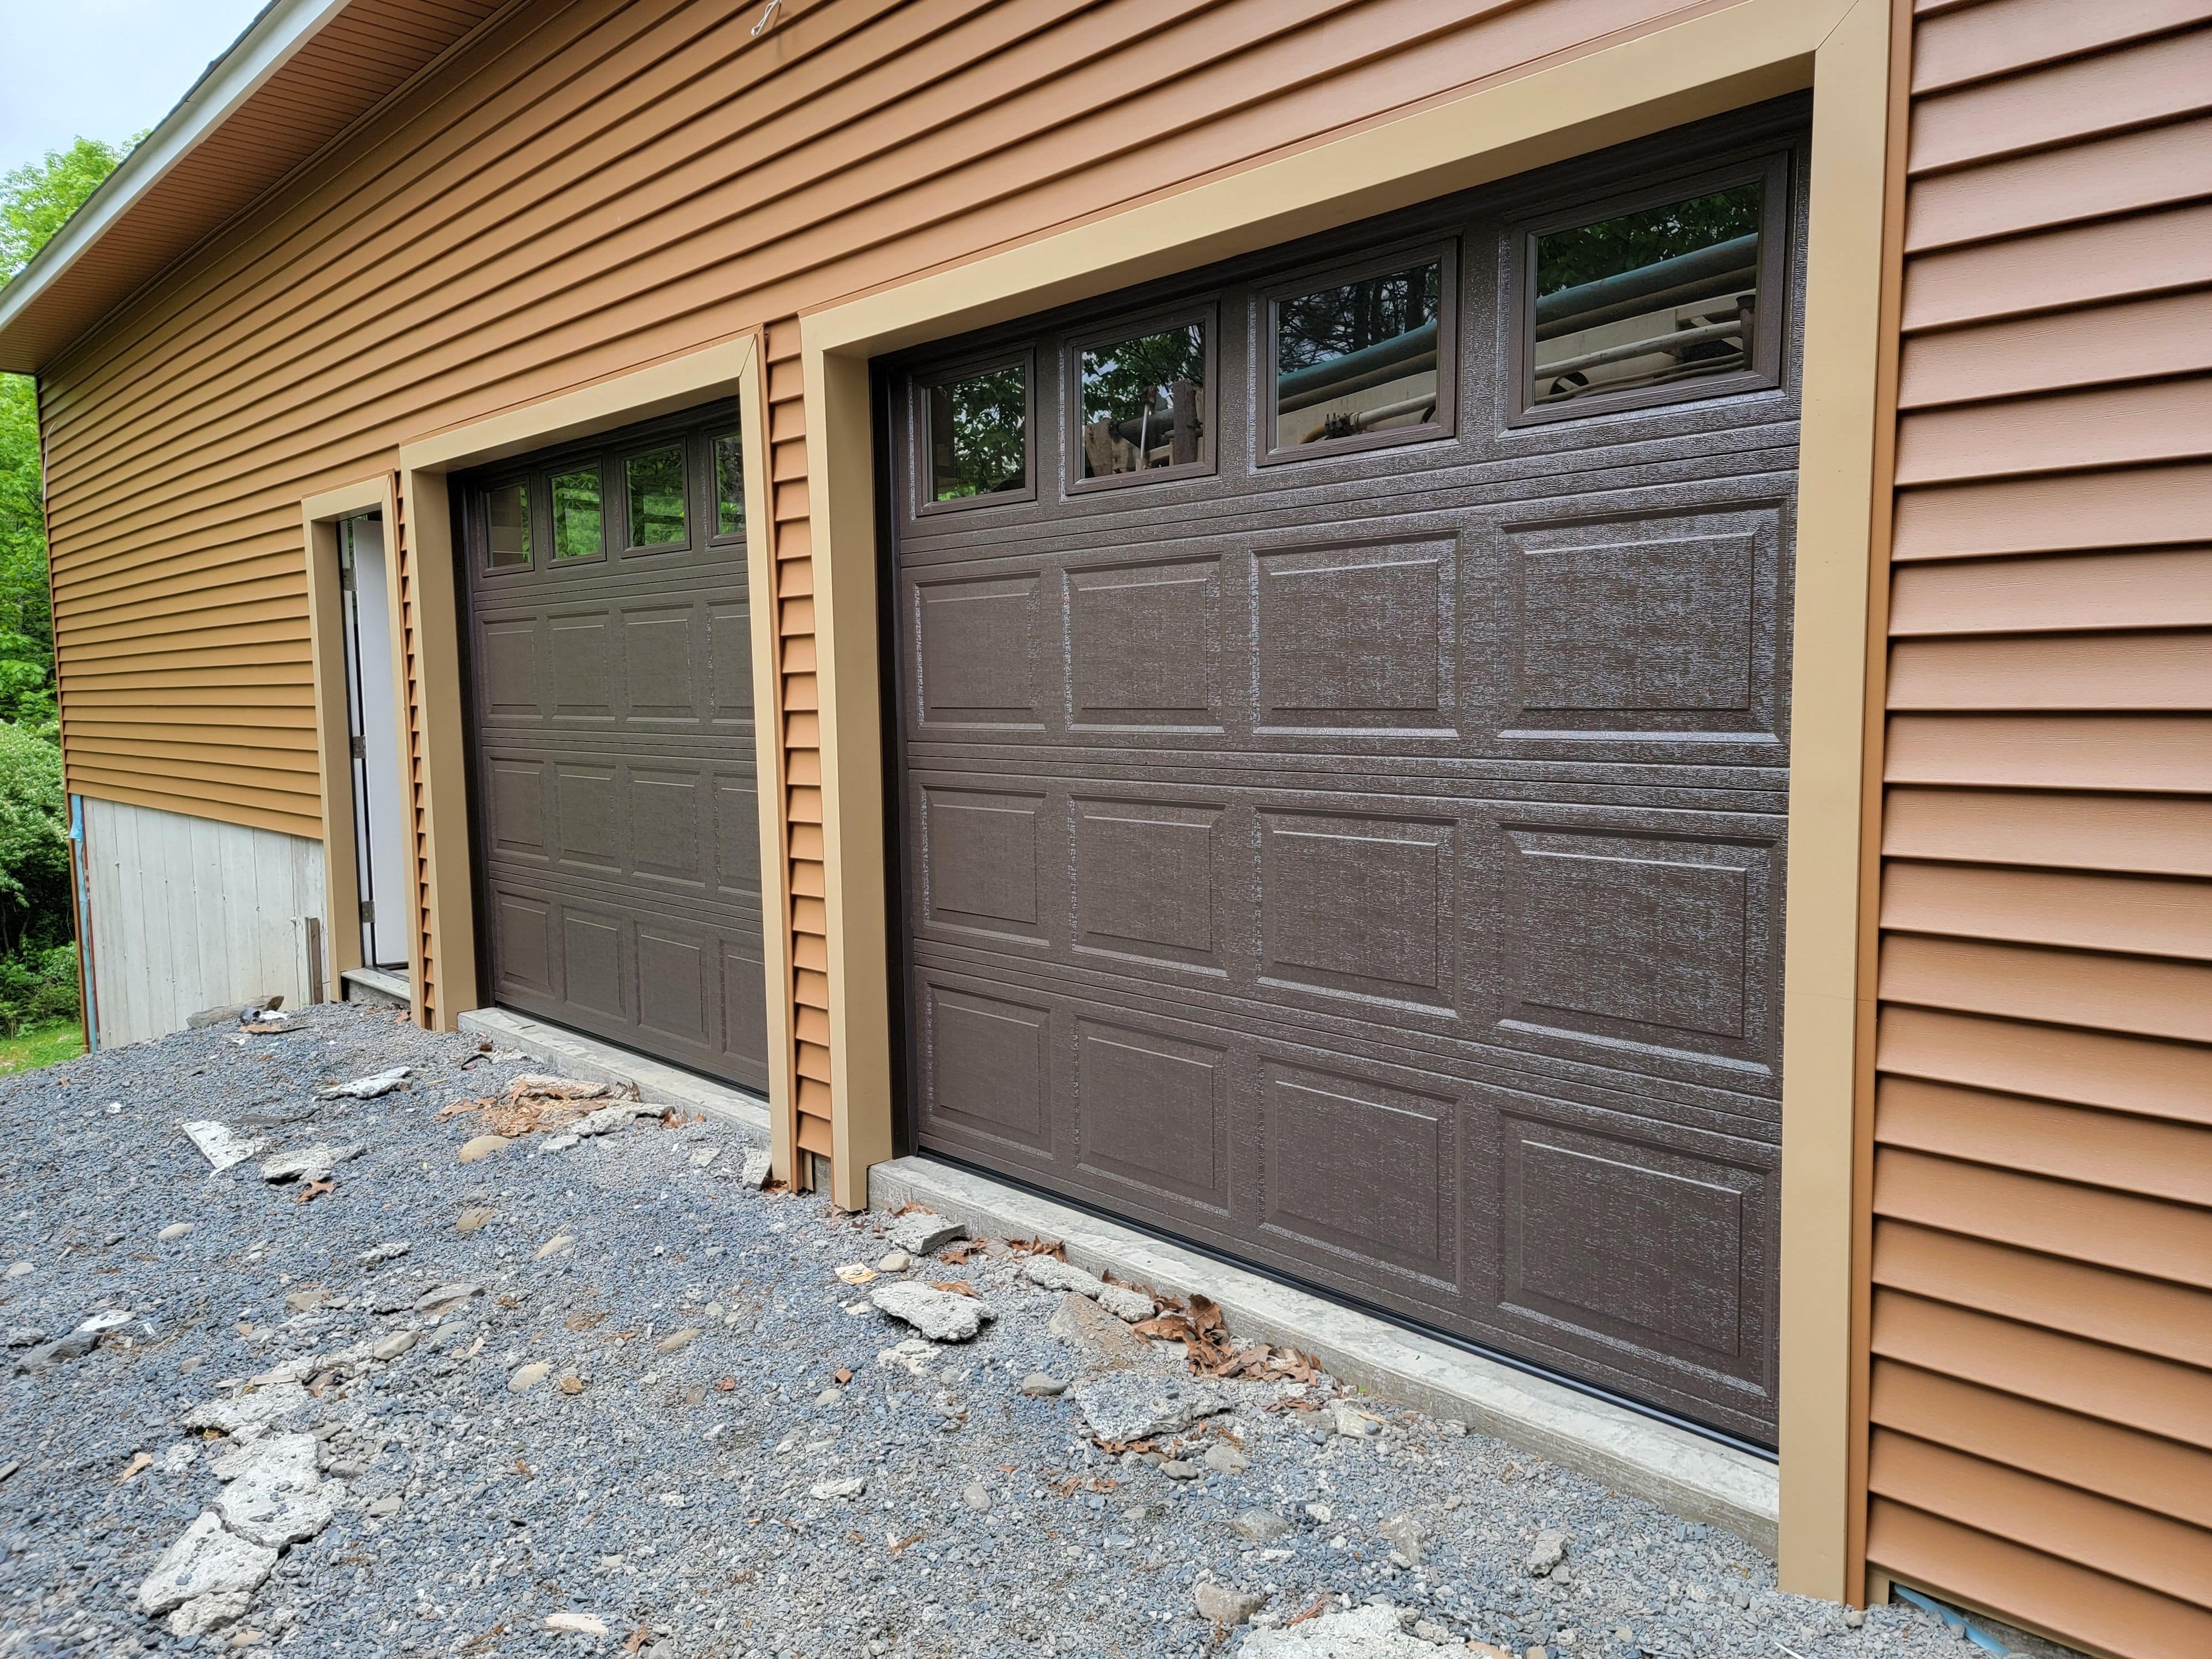 On location at Always Reliable Garage Doors Inc., a Garage Door Contractor in Warwick, NY